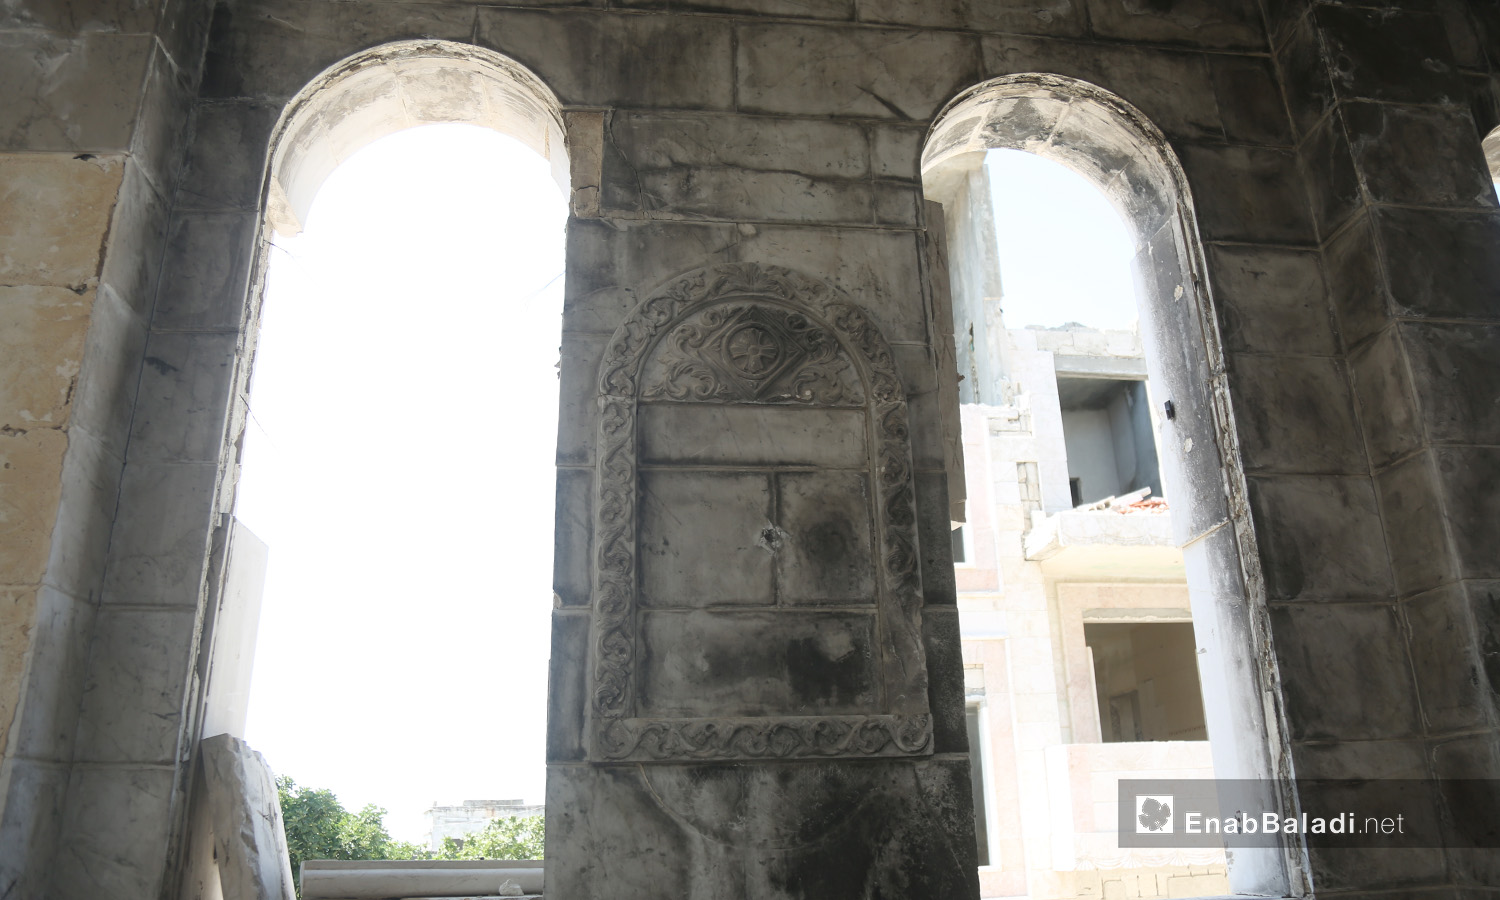 تعرضت الكنائس للقصف من قبل قوات النظام السوري وحلفائه كما تعرضت للسرقة والتخريب في منطقة الغسانية في ريف إدلب - تموز 2020 (عنب بلدي)